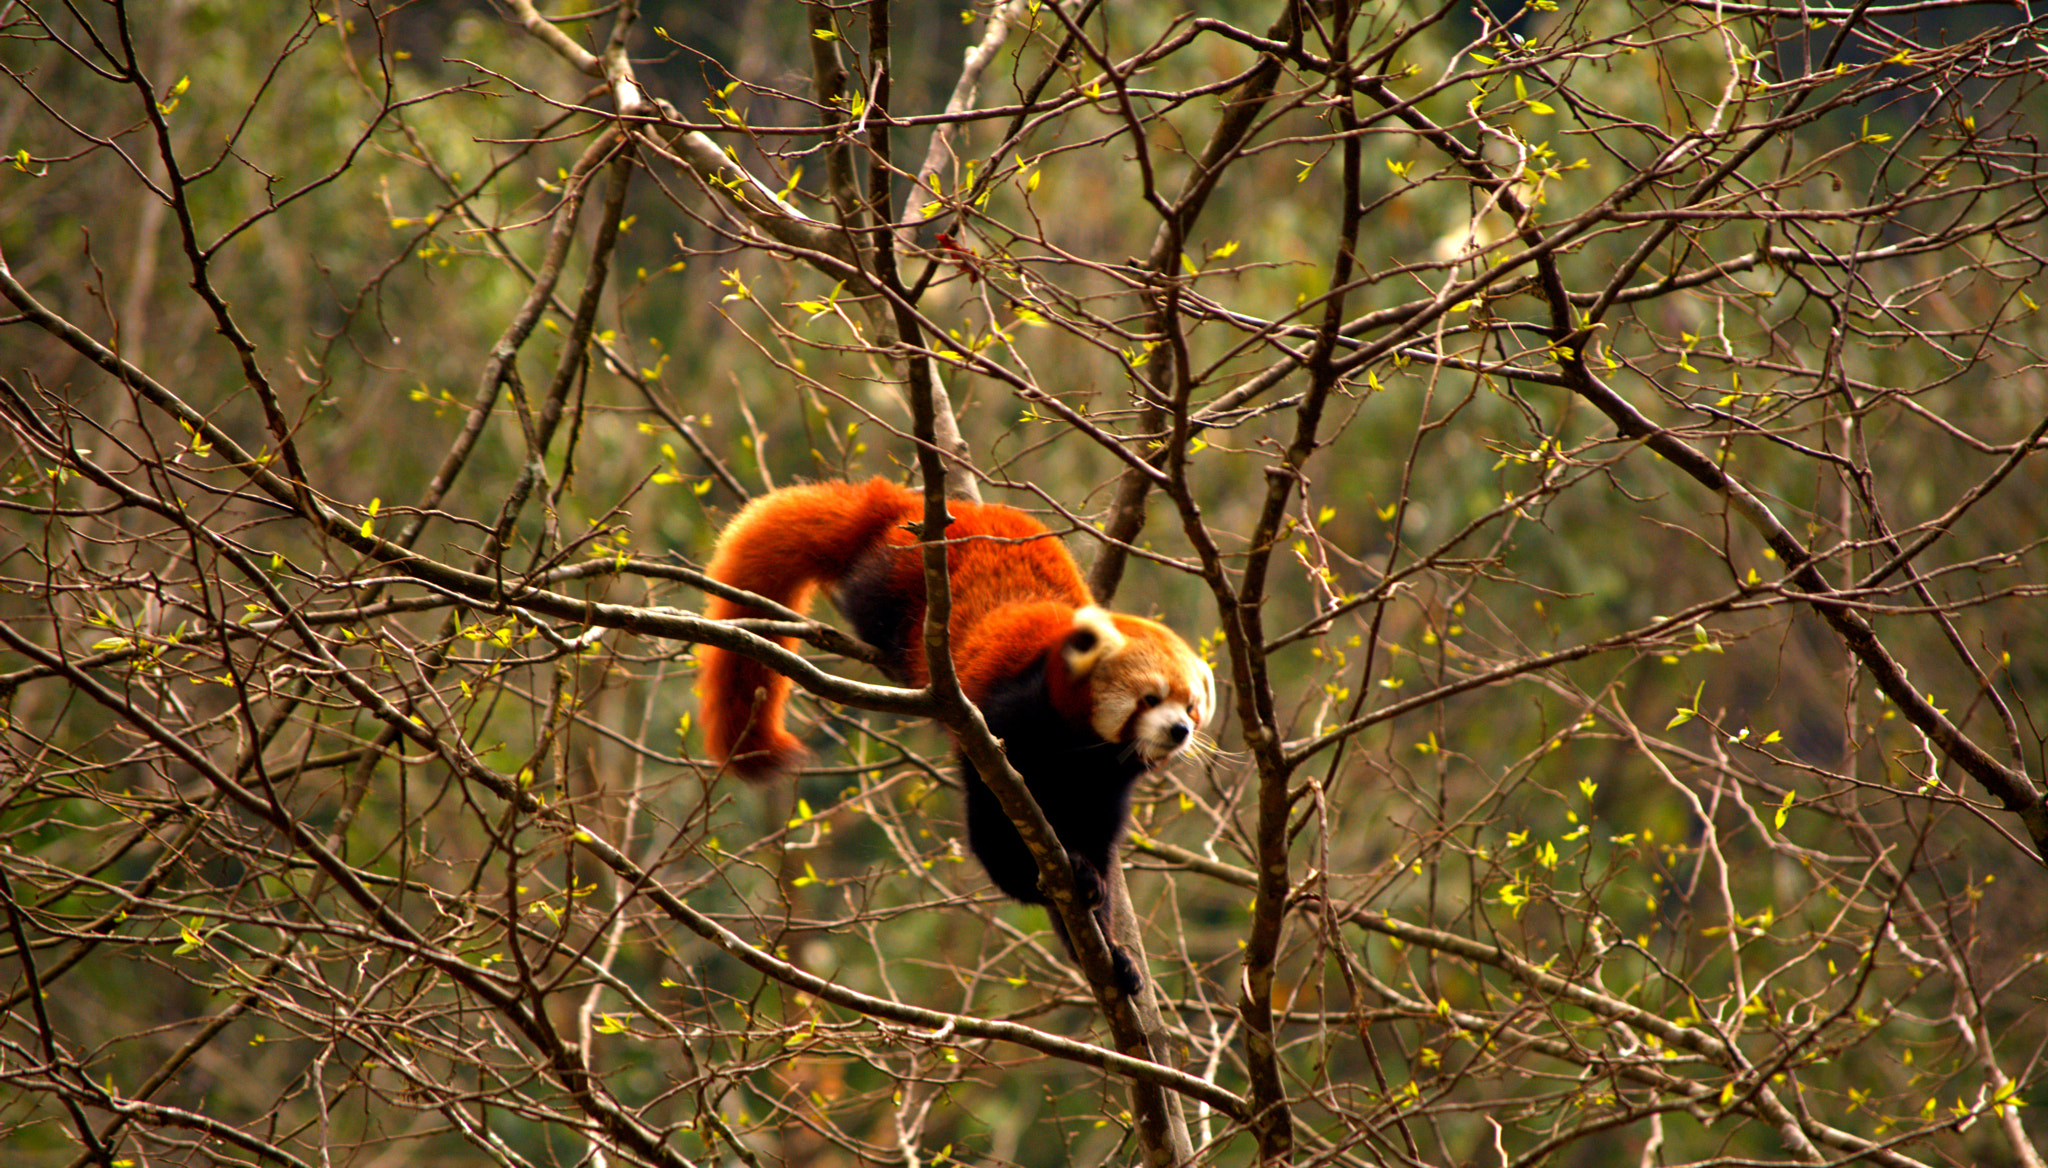 Nikon D5200 sample photo. The himalayan red panda photography